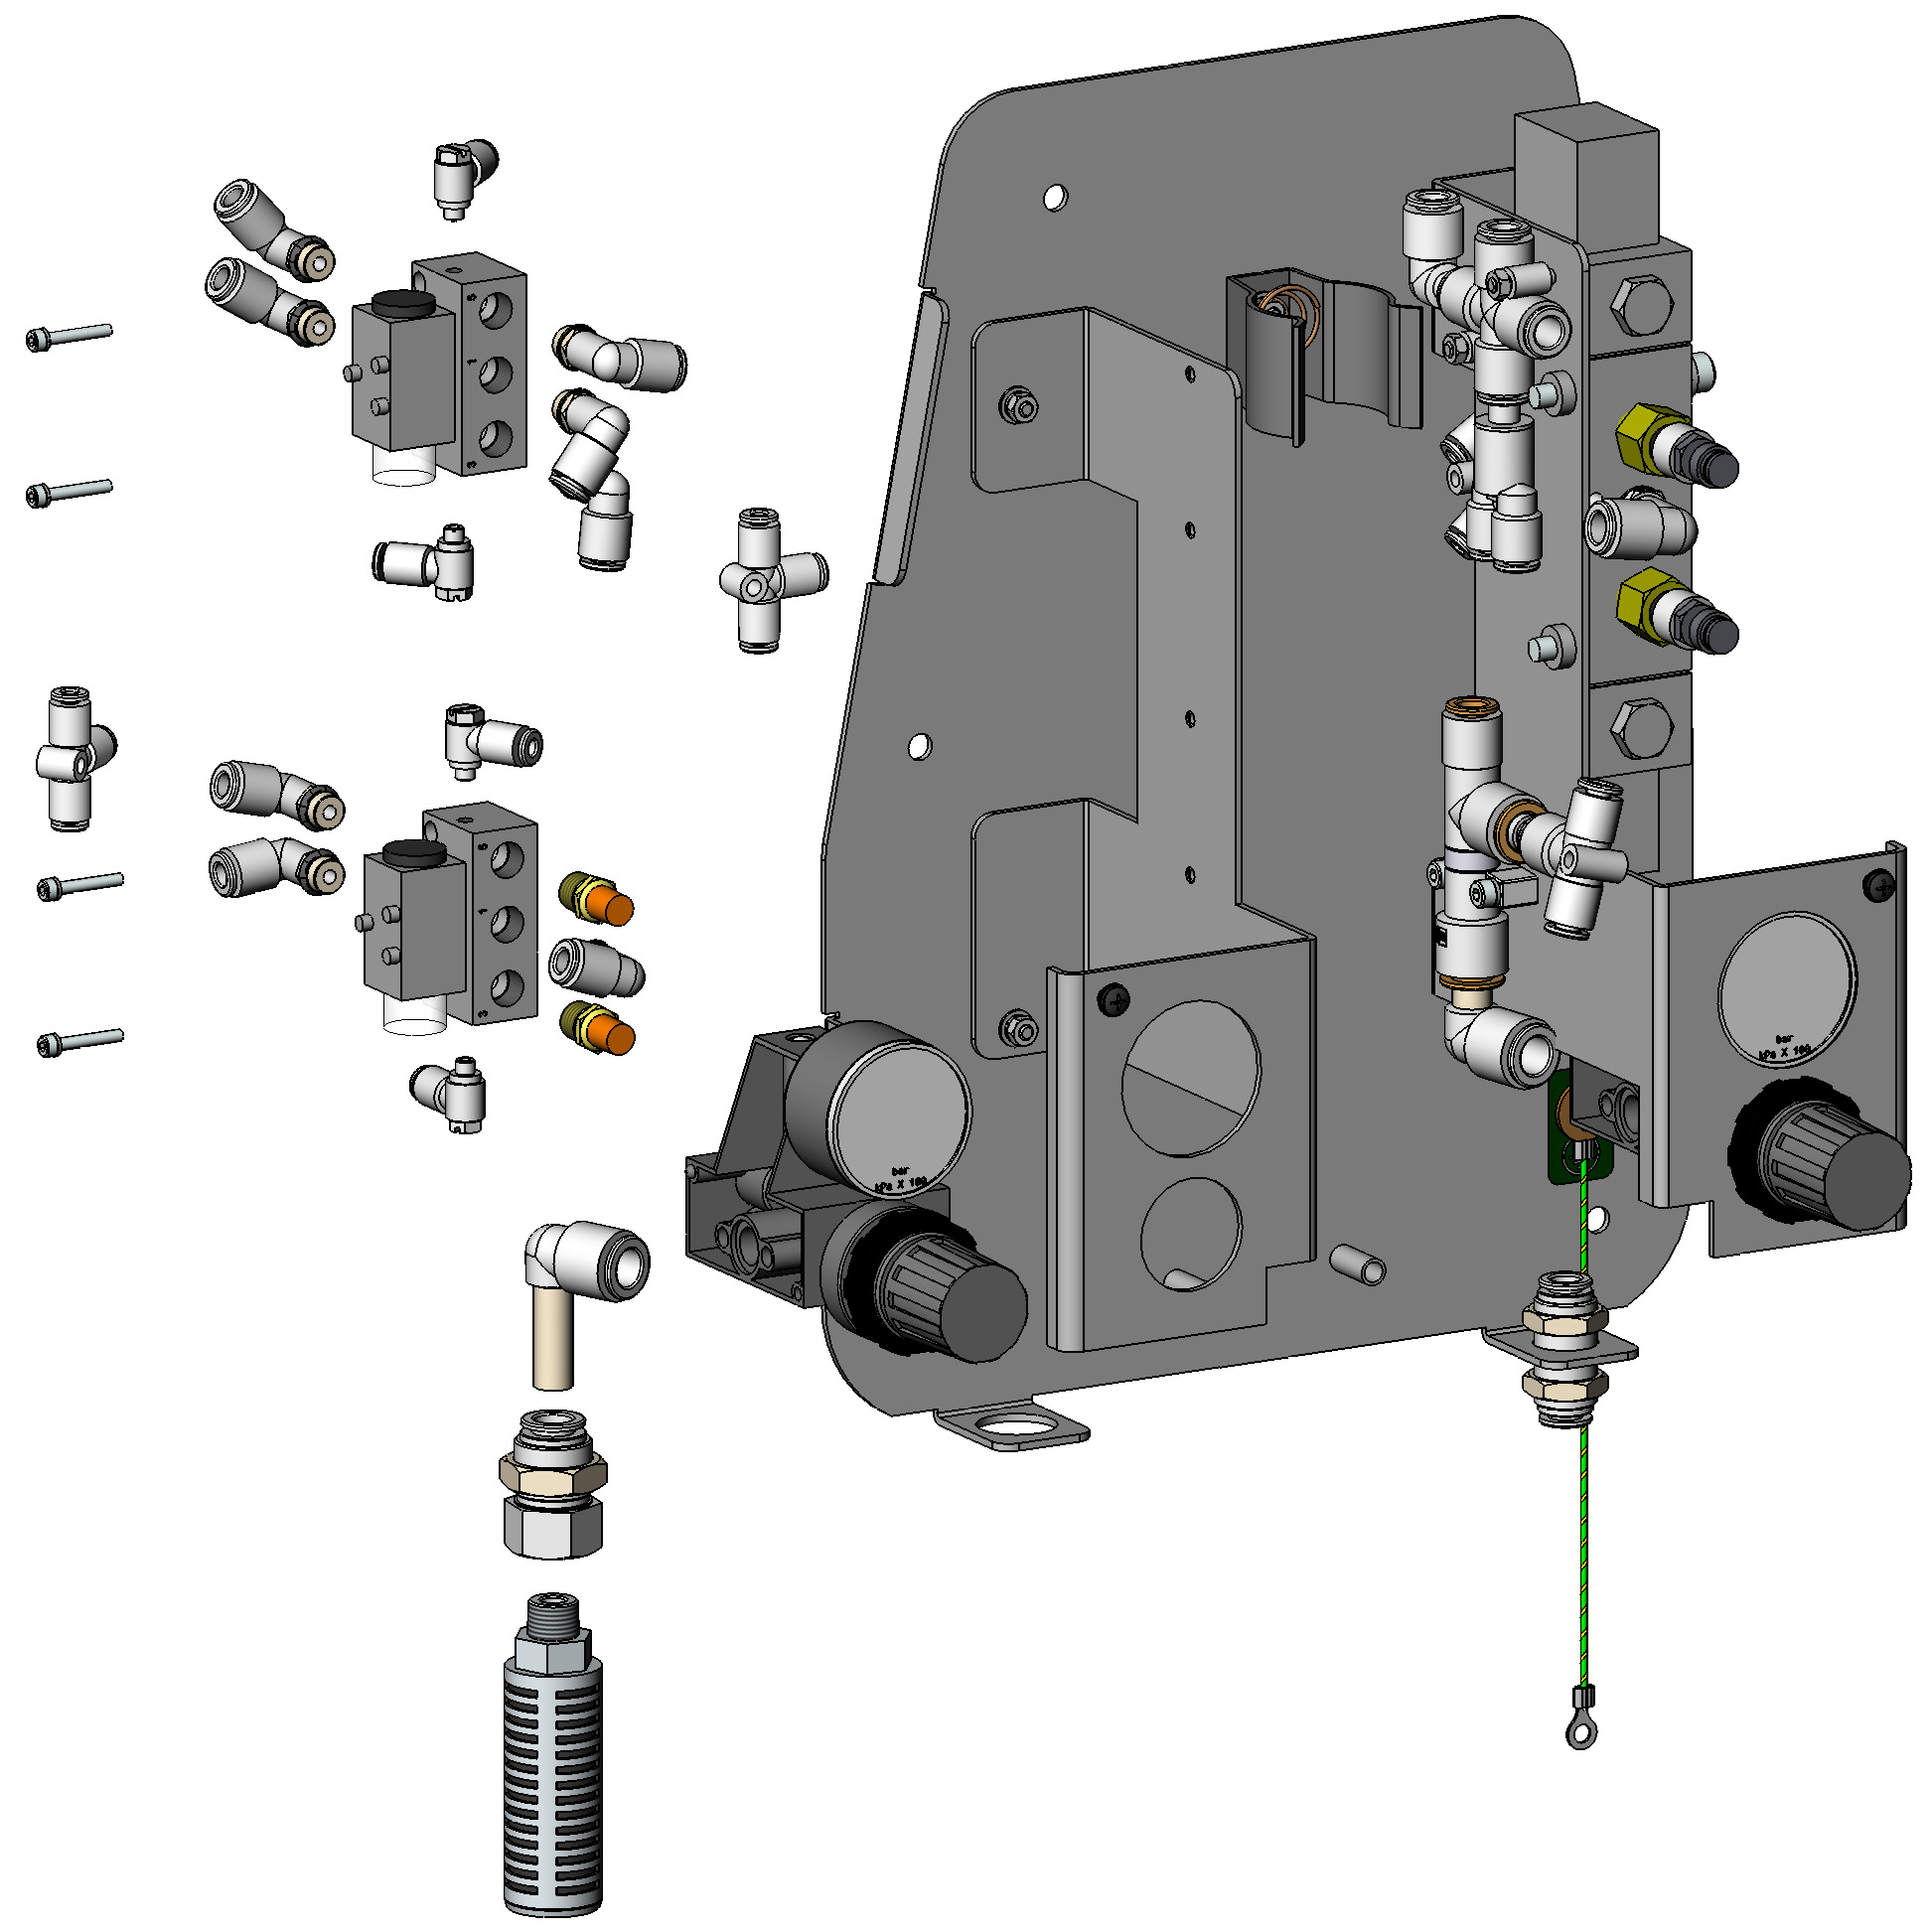 26 Högkapacitets HDLV-pump Prodigy generation II Pumpstyrningar Vänster sida Se bild 6. Detalj P/N Beskrivning ntal nm.